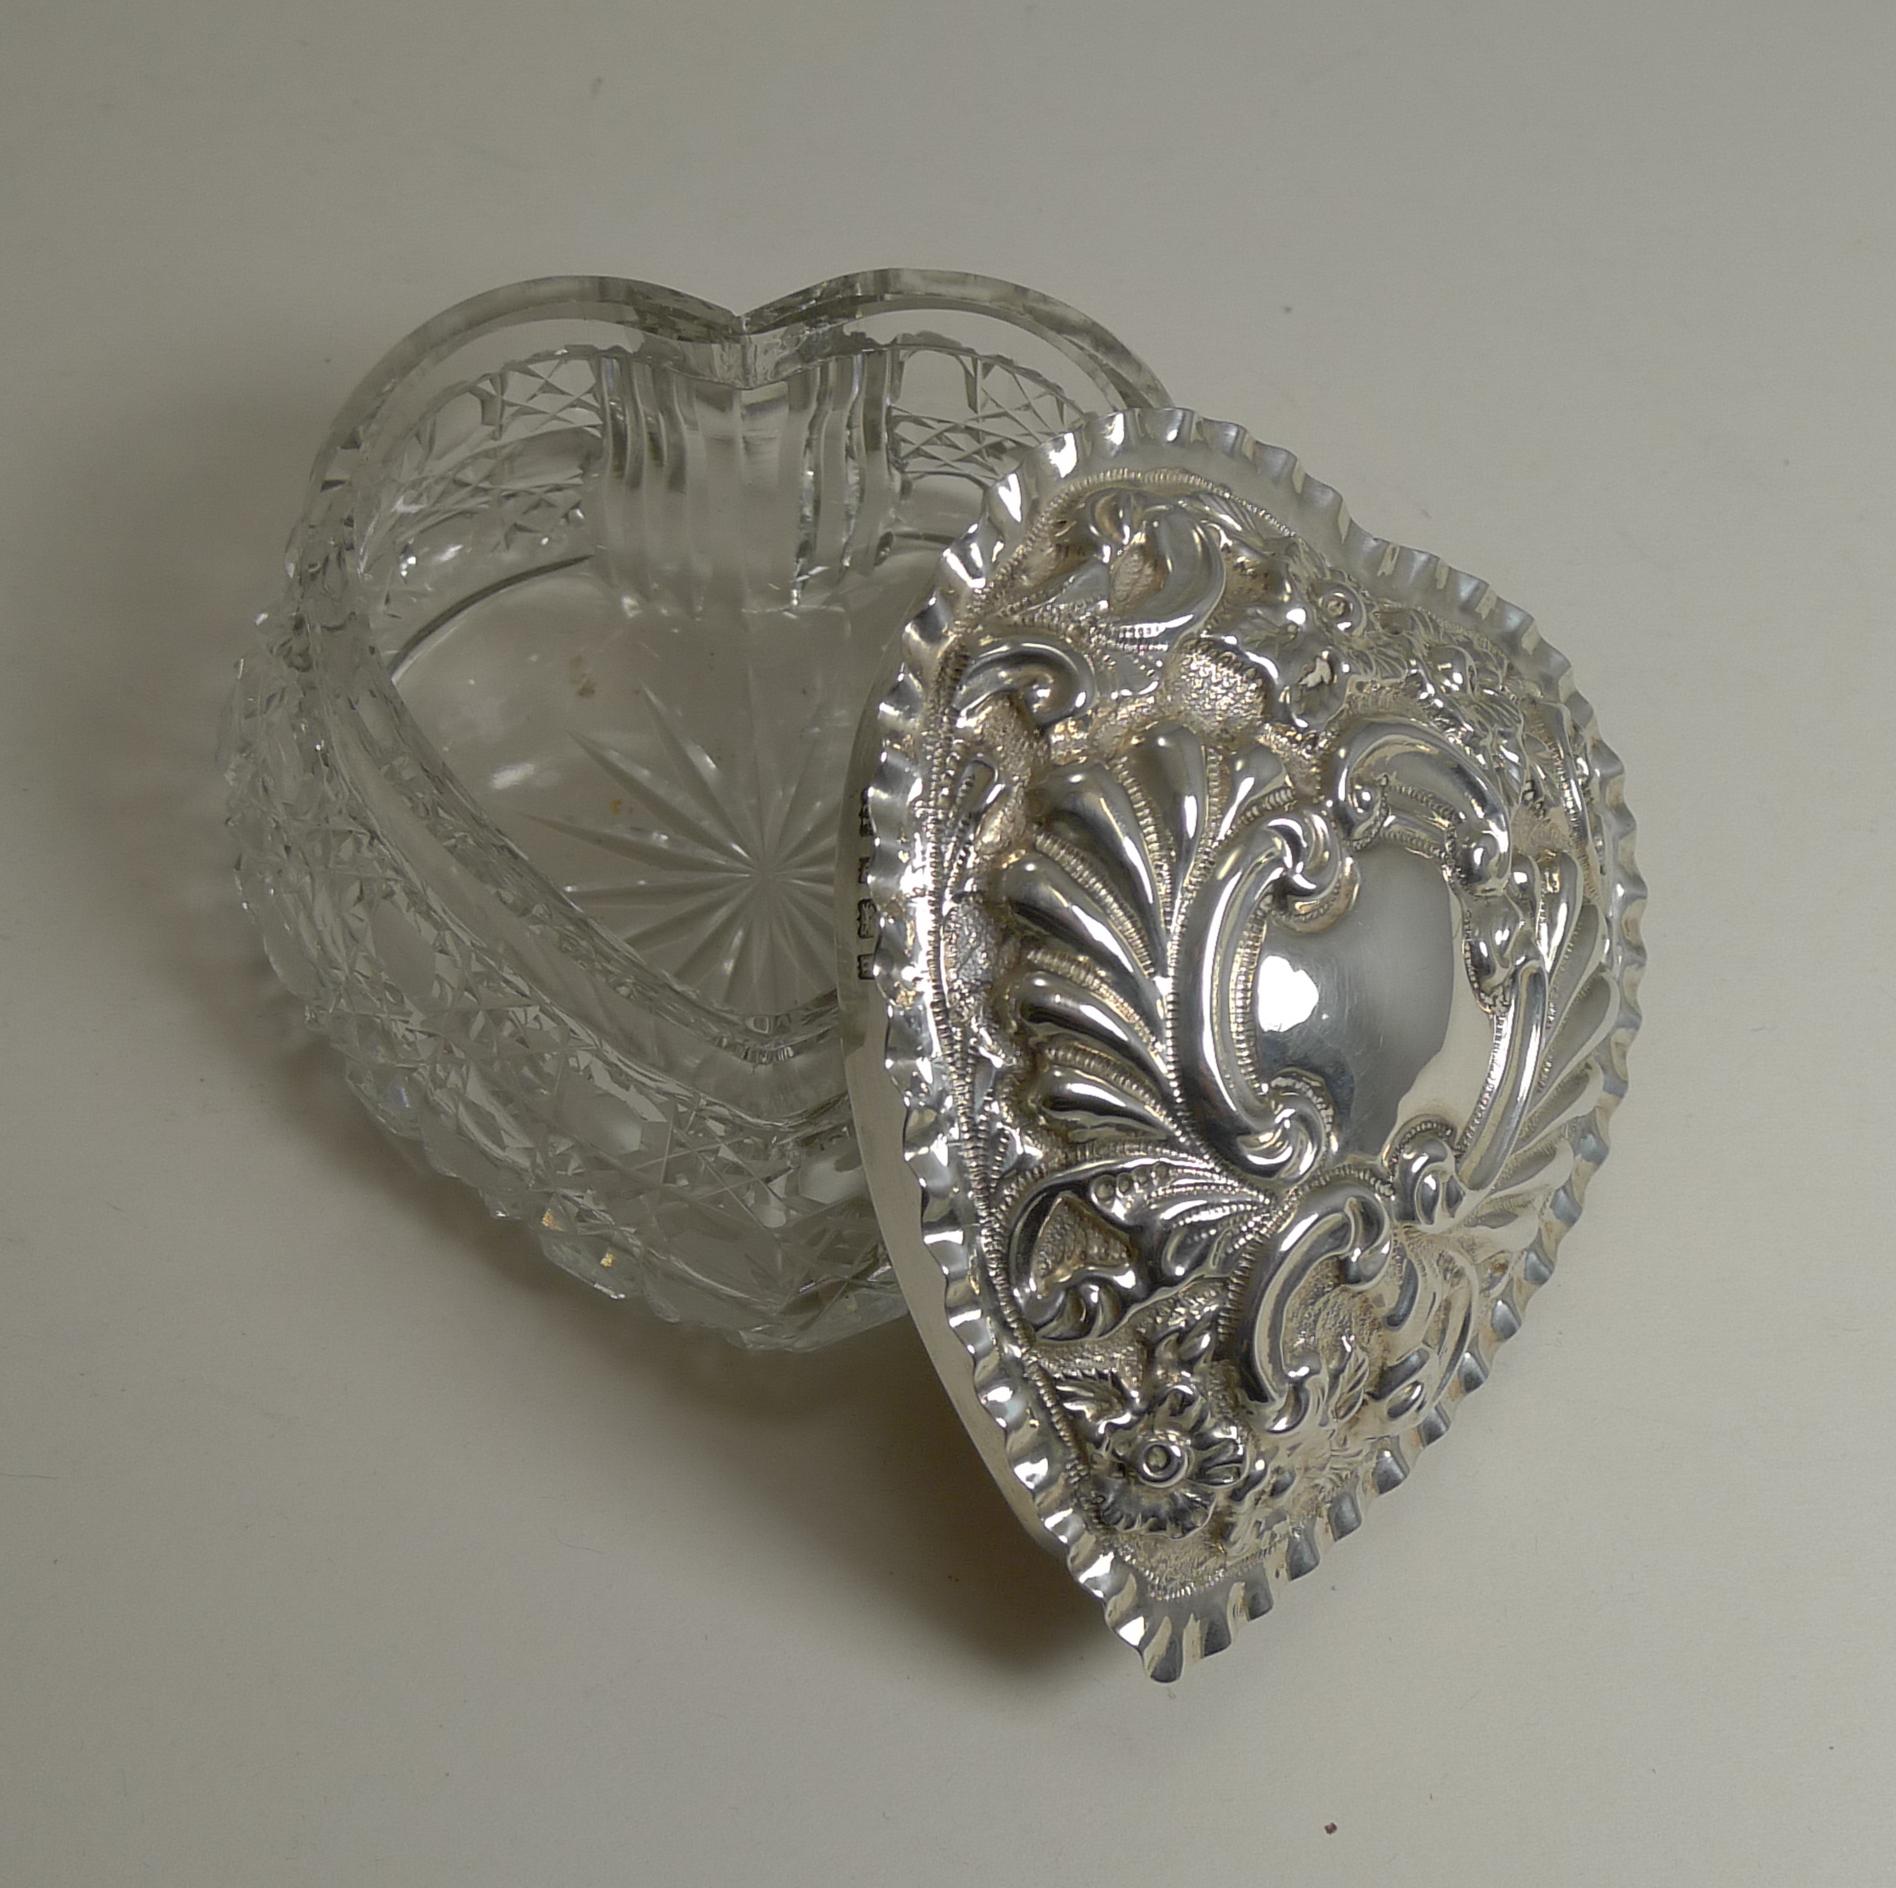 Un exemple romantique de boîte à bijoux édouardienne en forme de cœur, fabriquée à partir d'une pièce épaisse et lourde en cristal, magnifiquement taillée dans le design toujours populaire de l'escargot avec une étoile taillée à la base.

Le